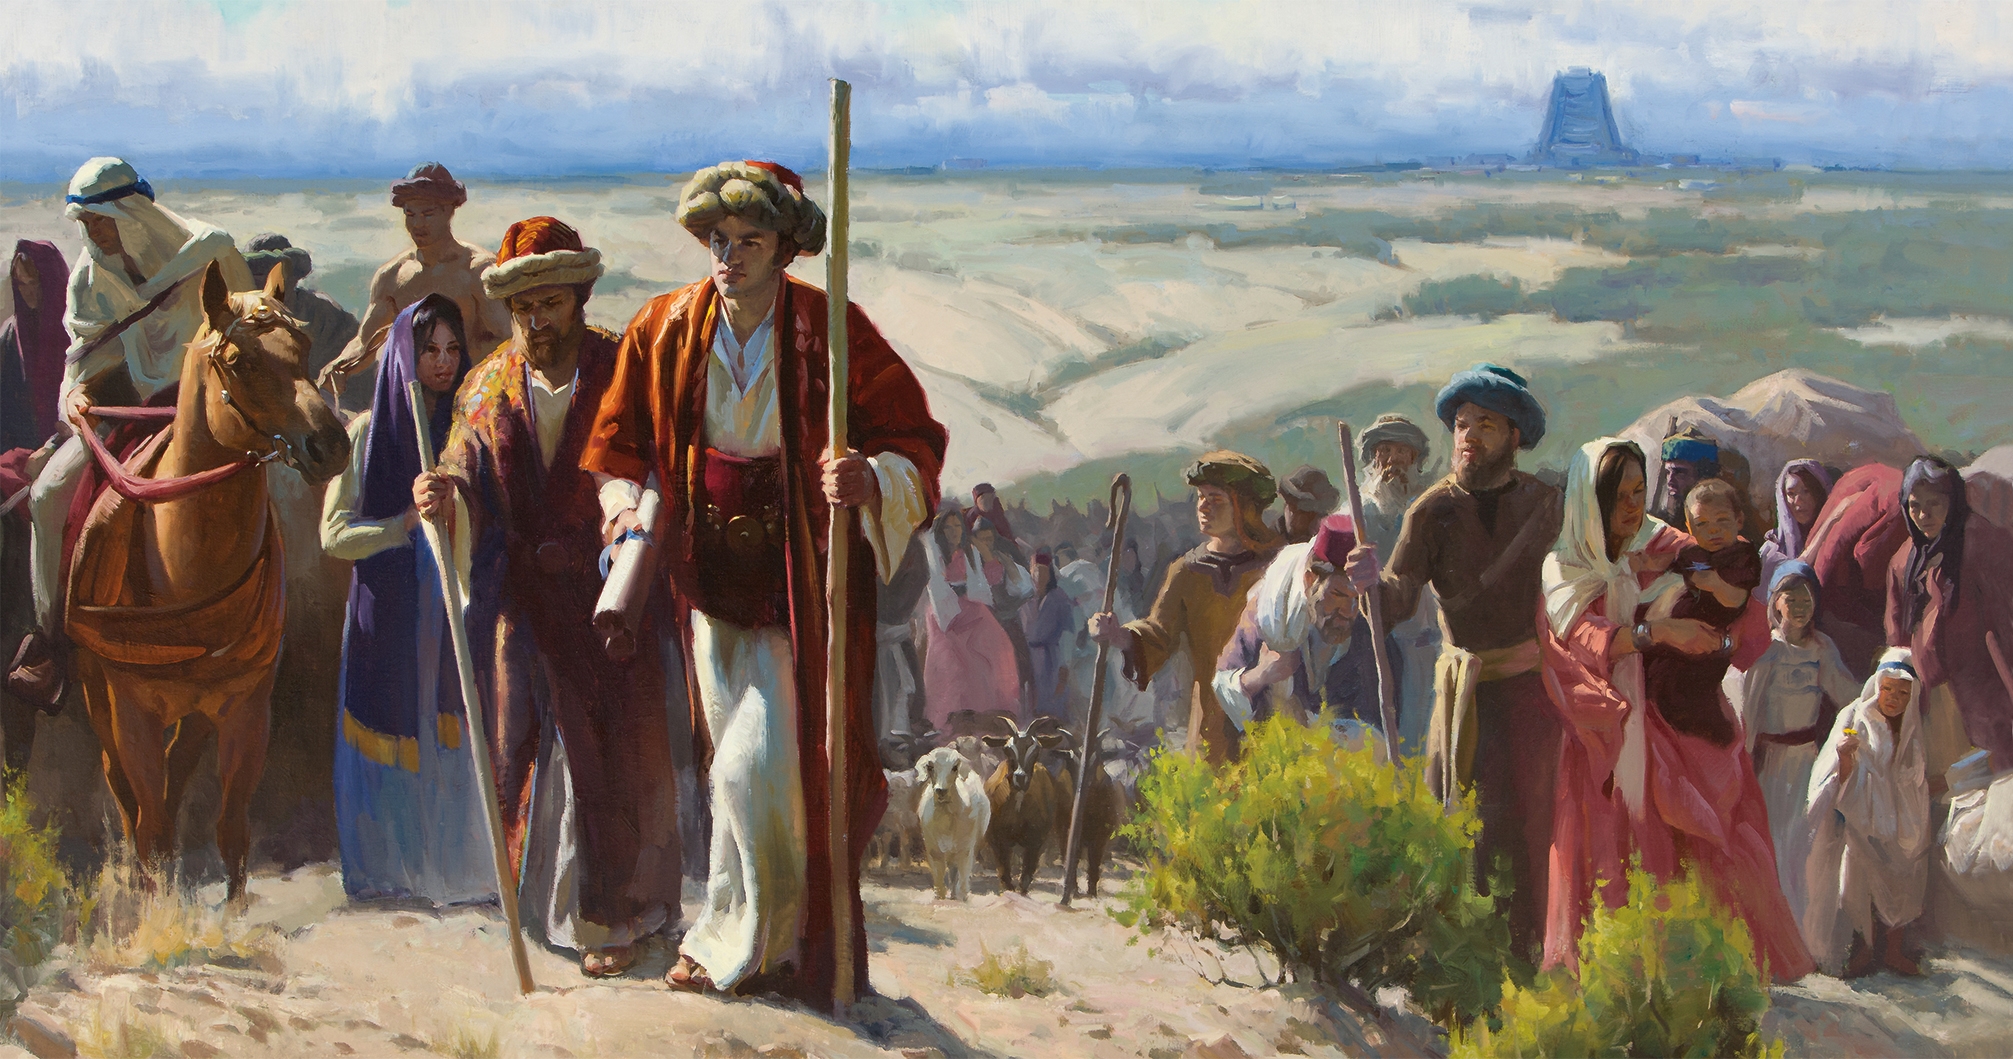 Art depicting the Jaredites leaving Babel.